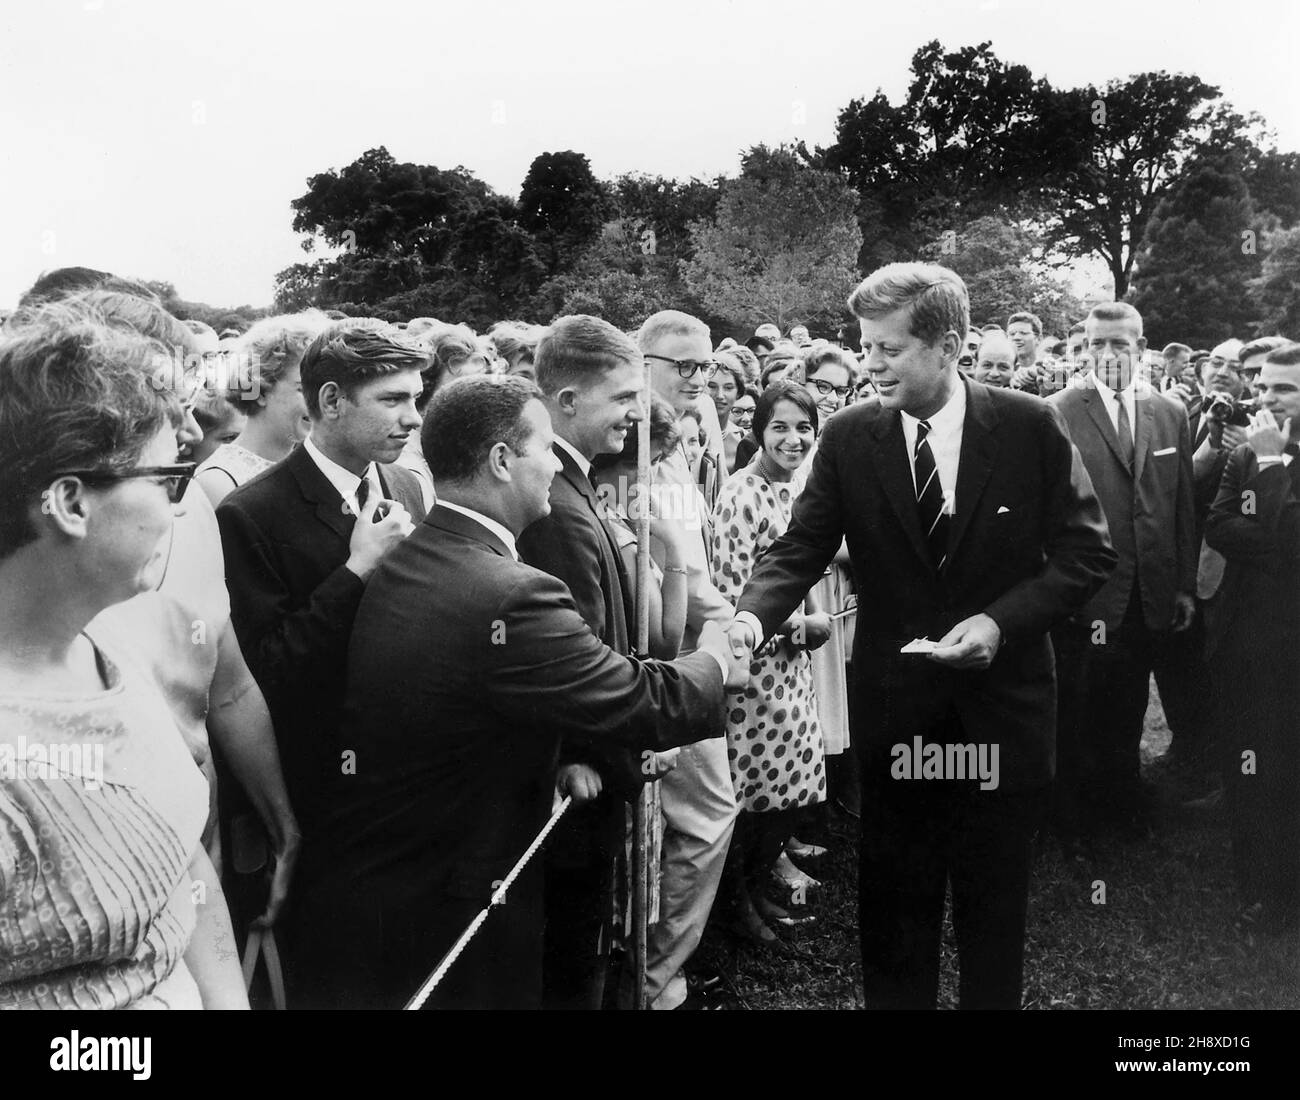 El Presidente de los Estados Unidos, John F. Kennedy, saluda a los Voluntarios del Cuerpo de Paz en el South Lawn of White House, Washington, D.C., EE.UU., Abbie Rowe, Oficina Fotografía de la Casa Blanca, 9 de agosto de 1962 Foto de stock